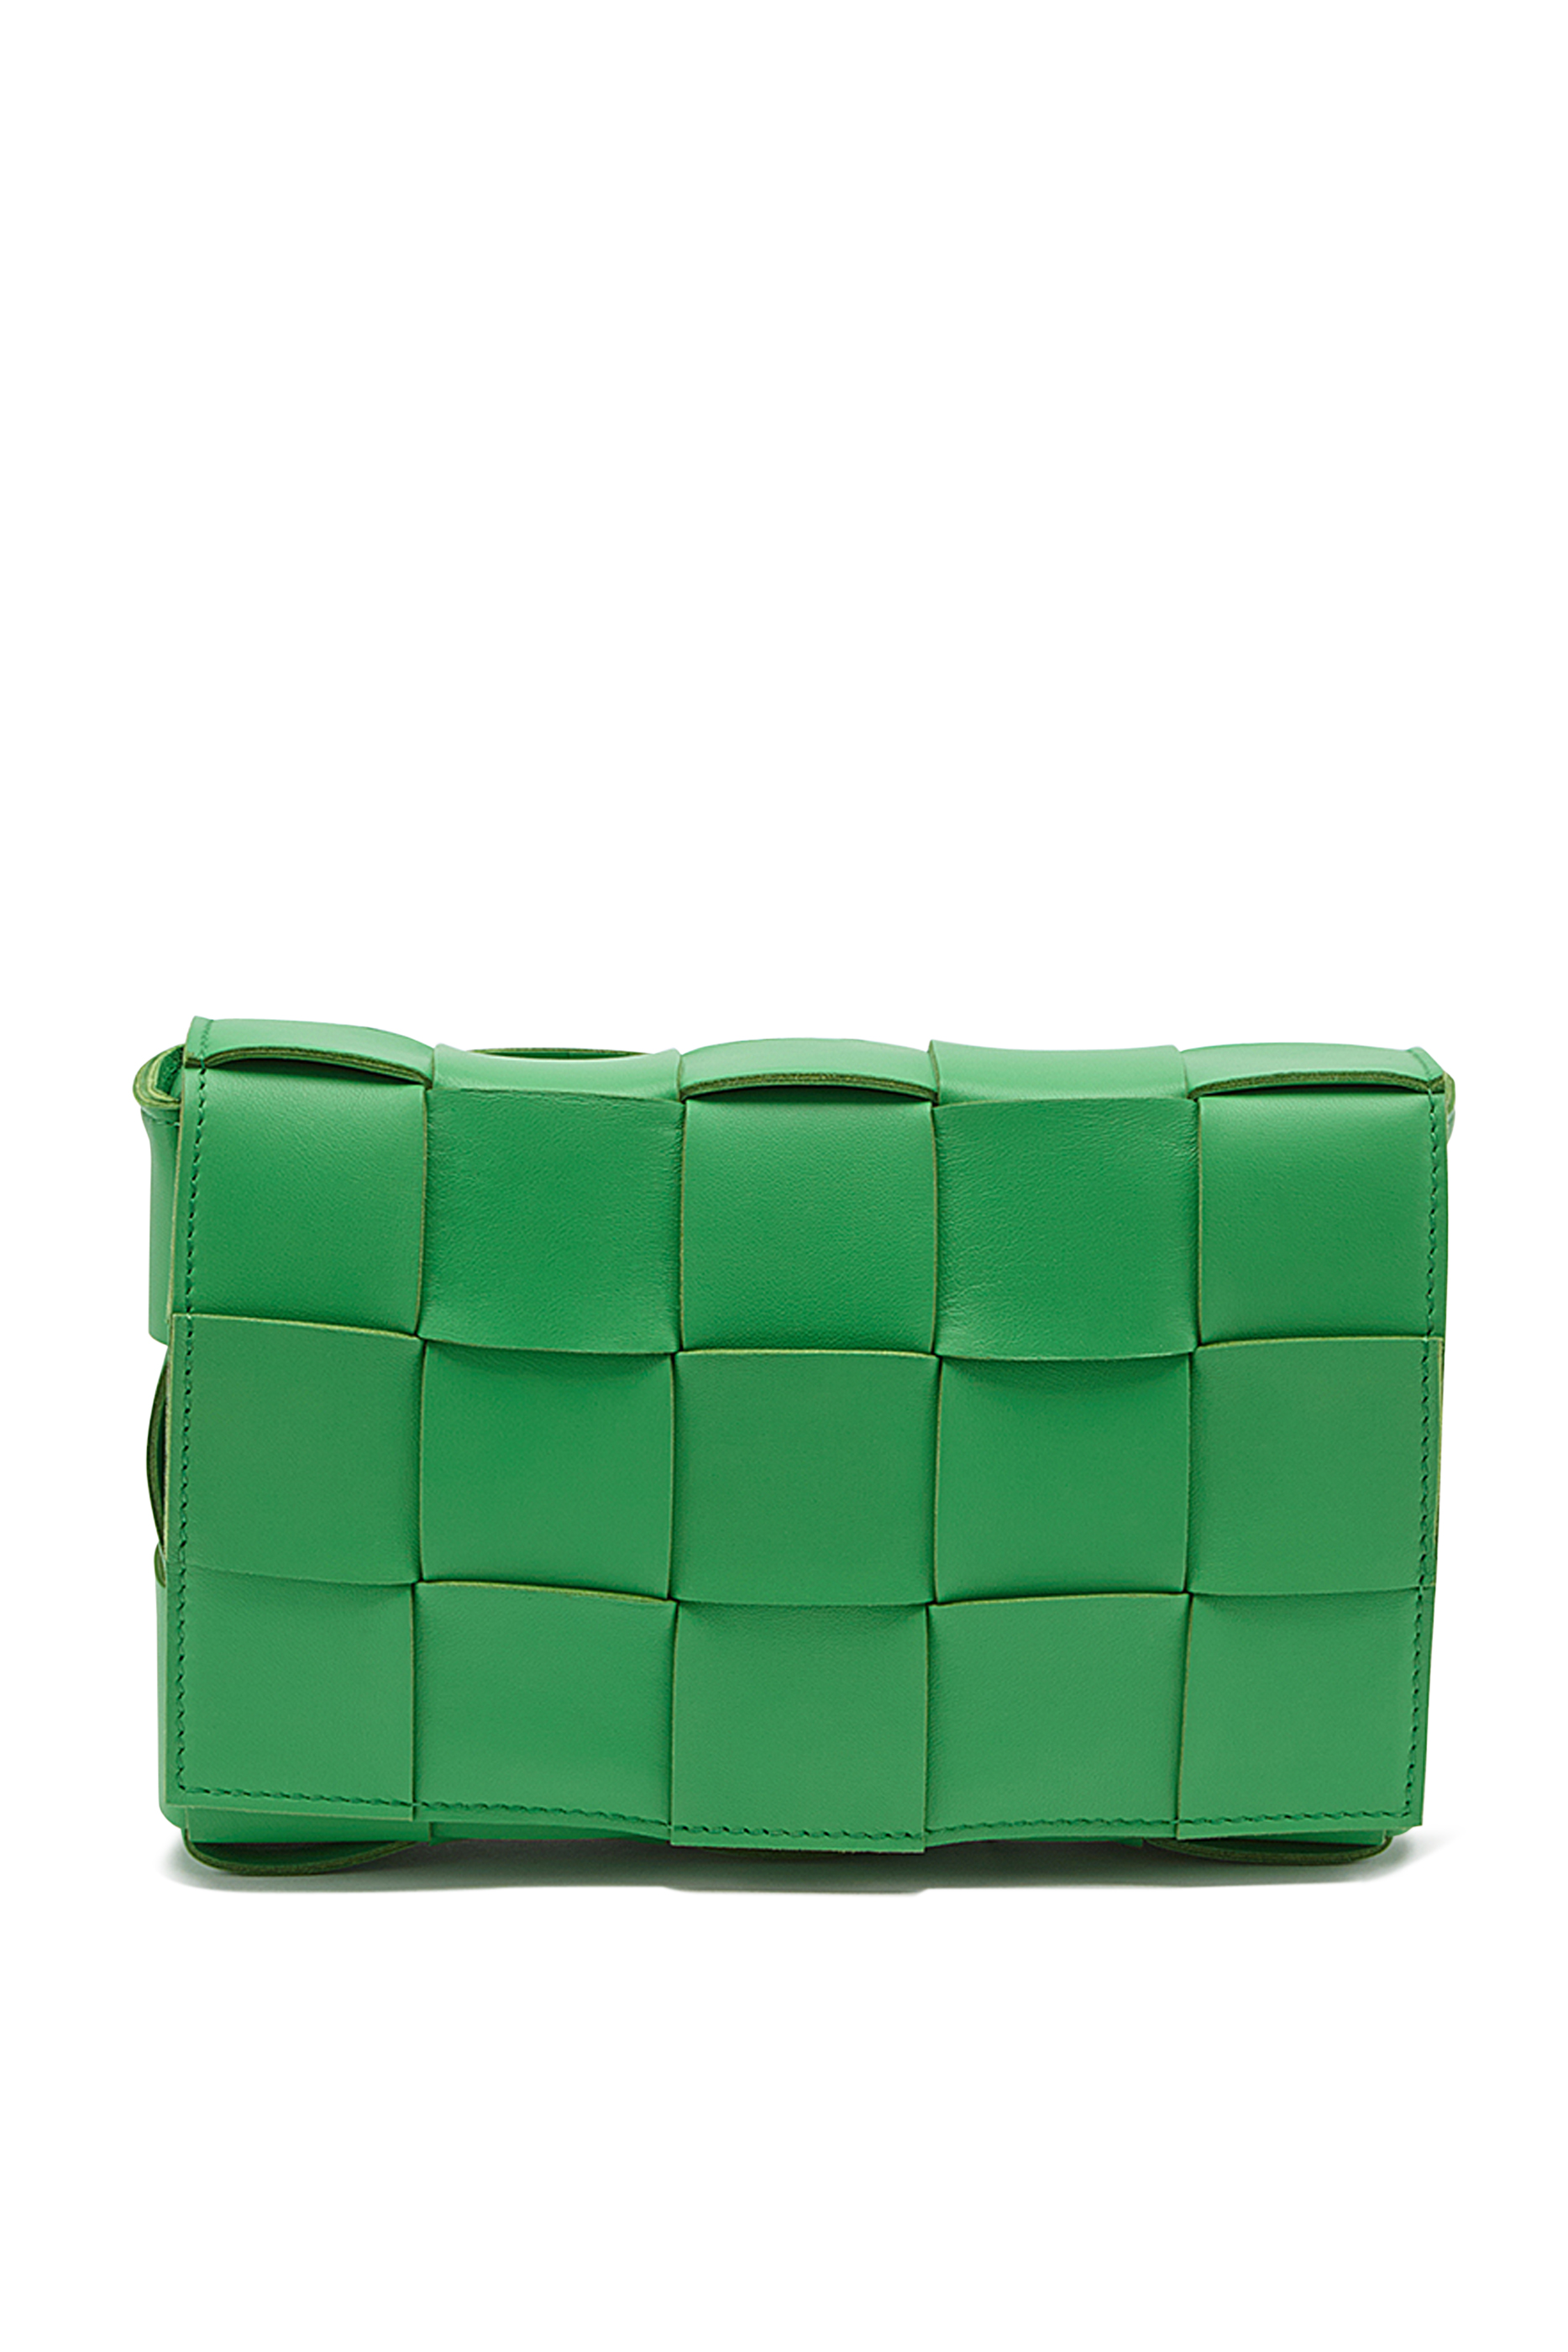 Buy Bottega Veneta Leather Cassette Bag for Womens | Bloomingdale's UAE